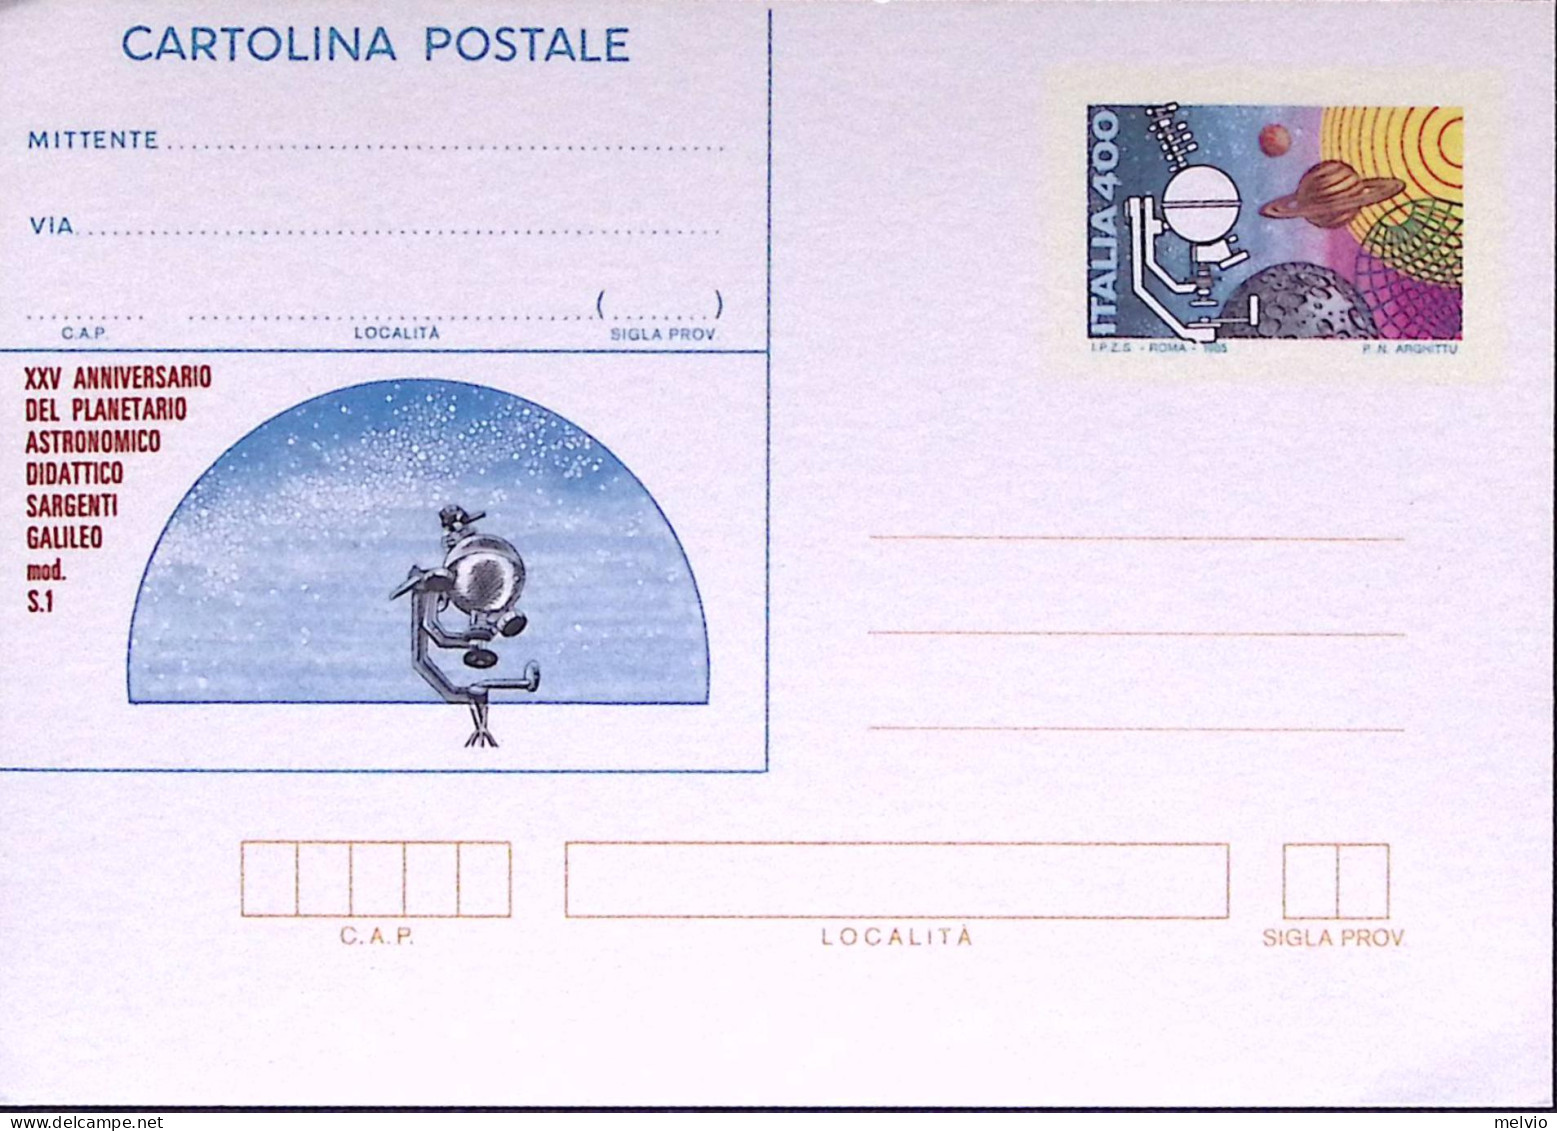 1985-Cartolina Postale Lire 400 Umbriaphil Nuova - Interi Postali